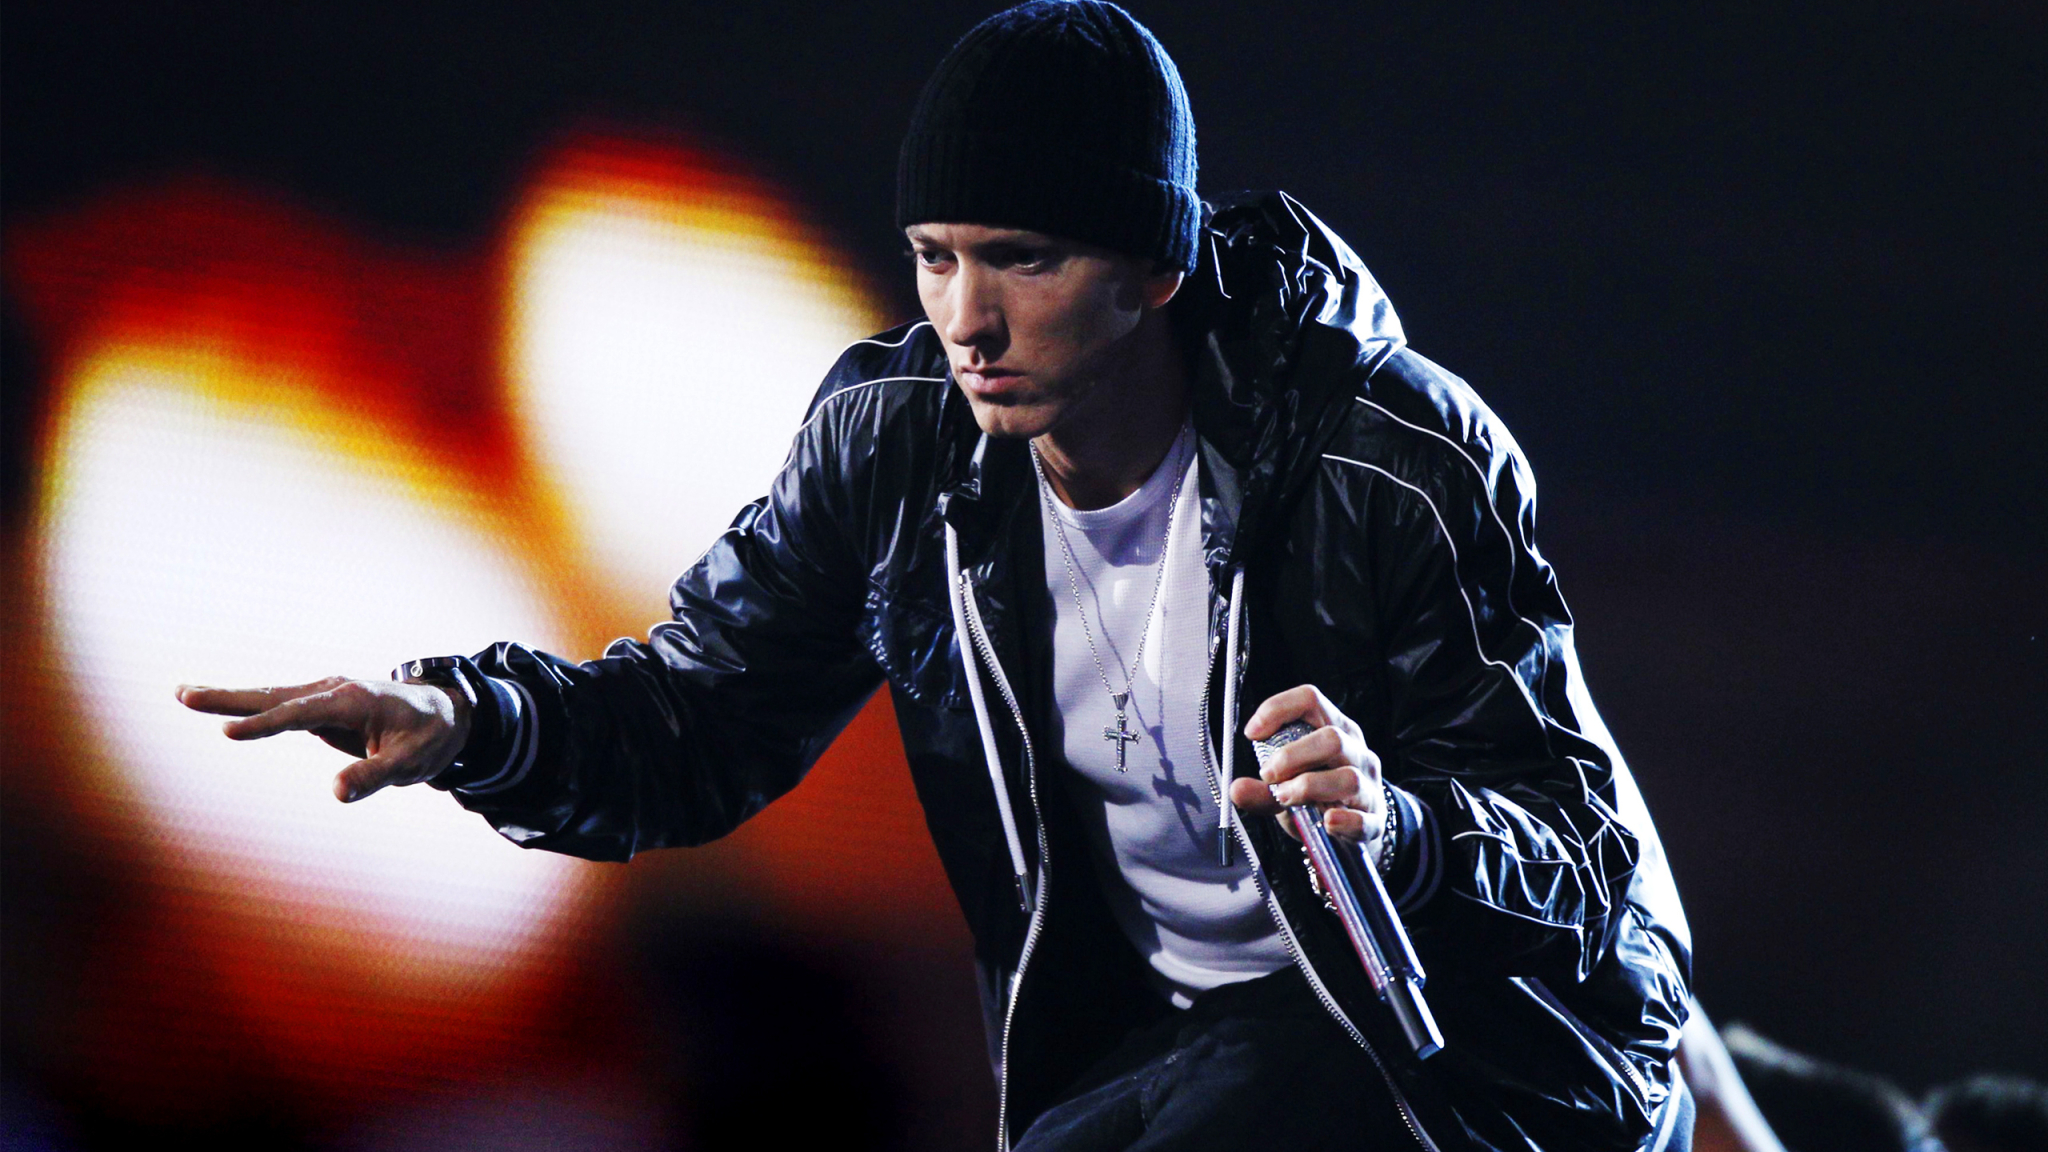 2048x1152 Eminem Singer Rapper 2048x1152 Resolution